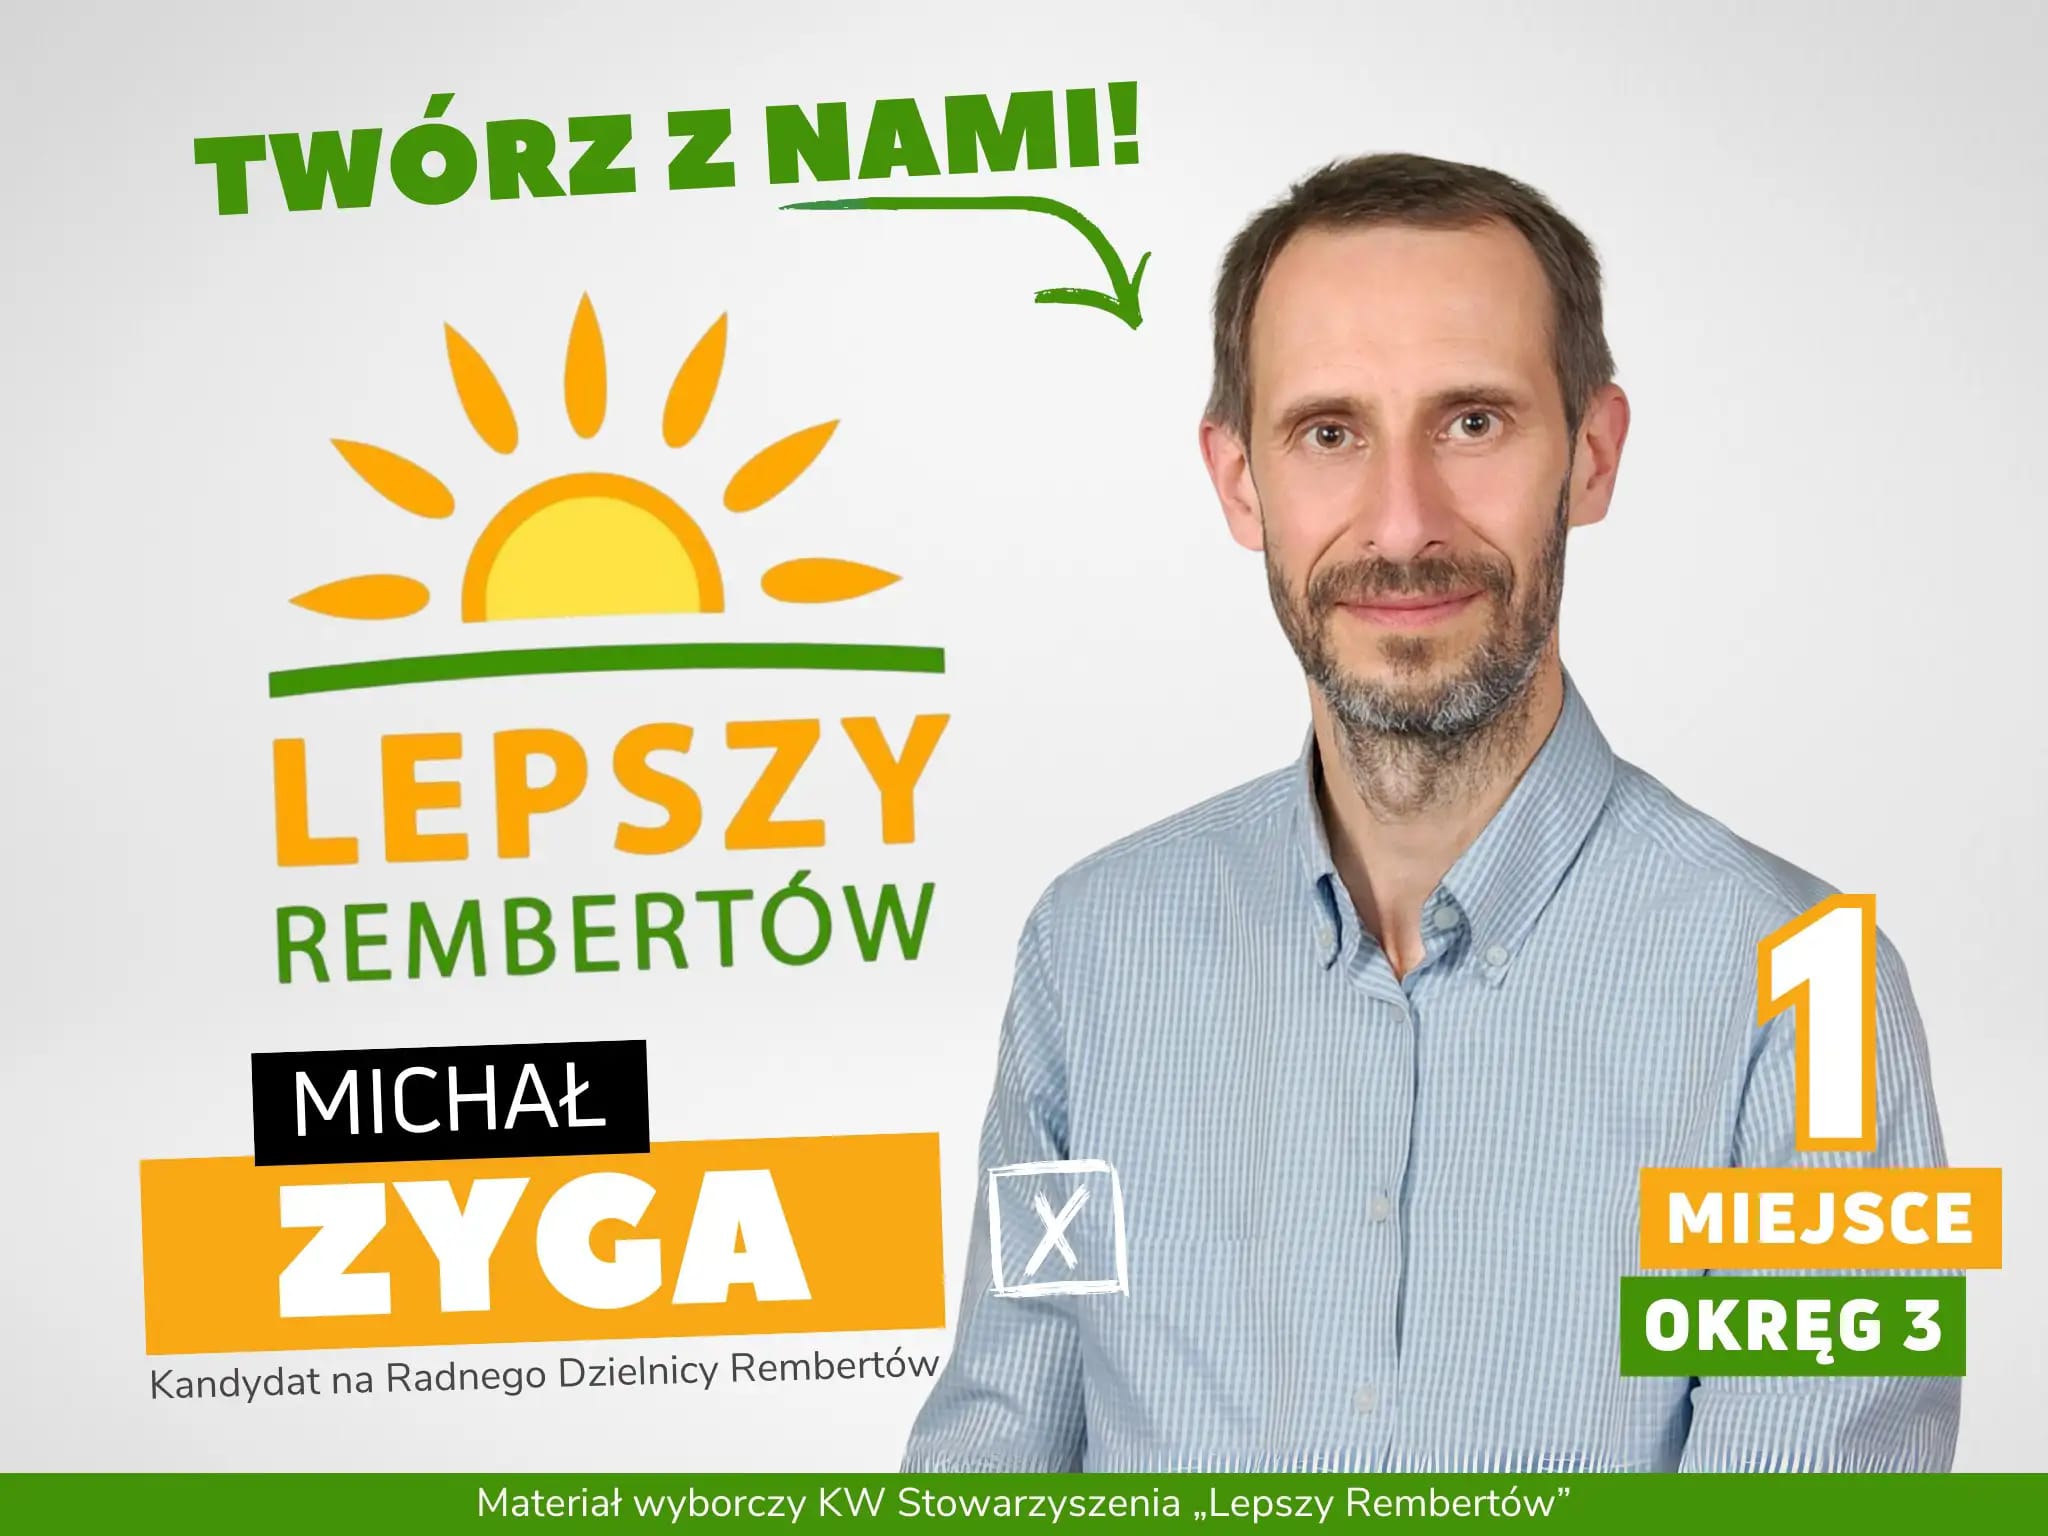 Michał Zyga Okręg 3 miejsce 1